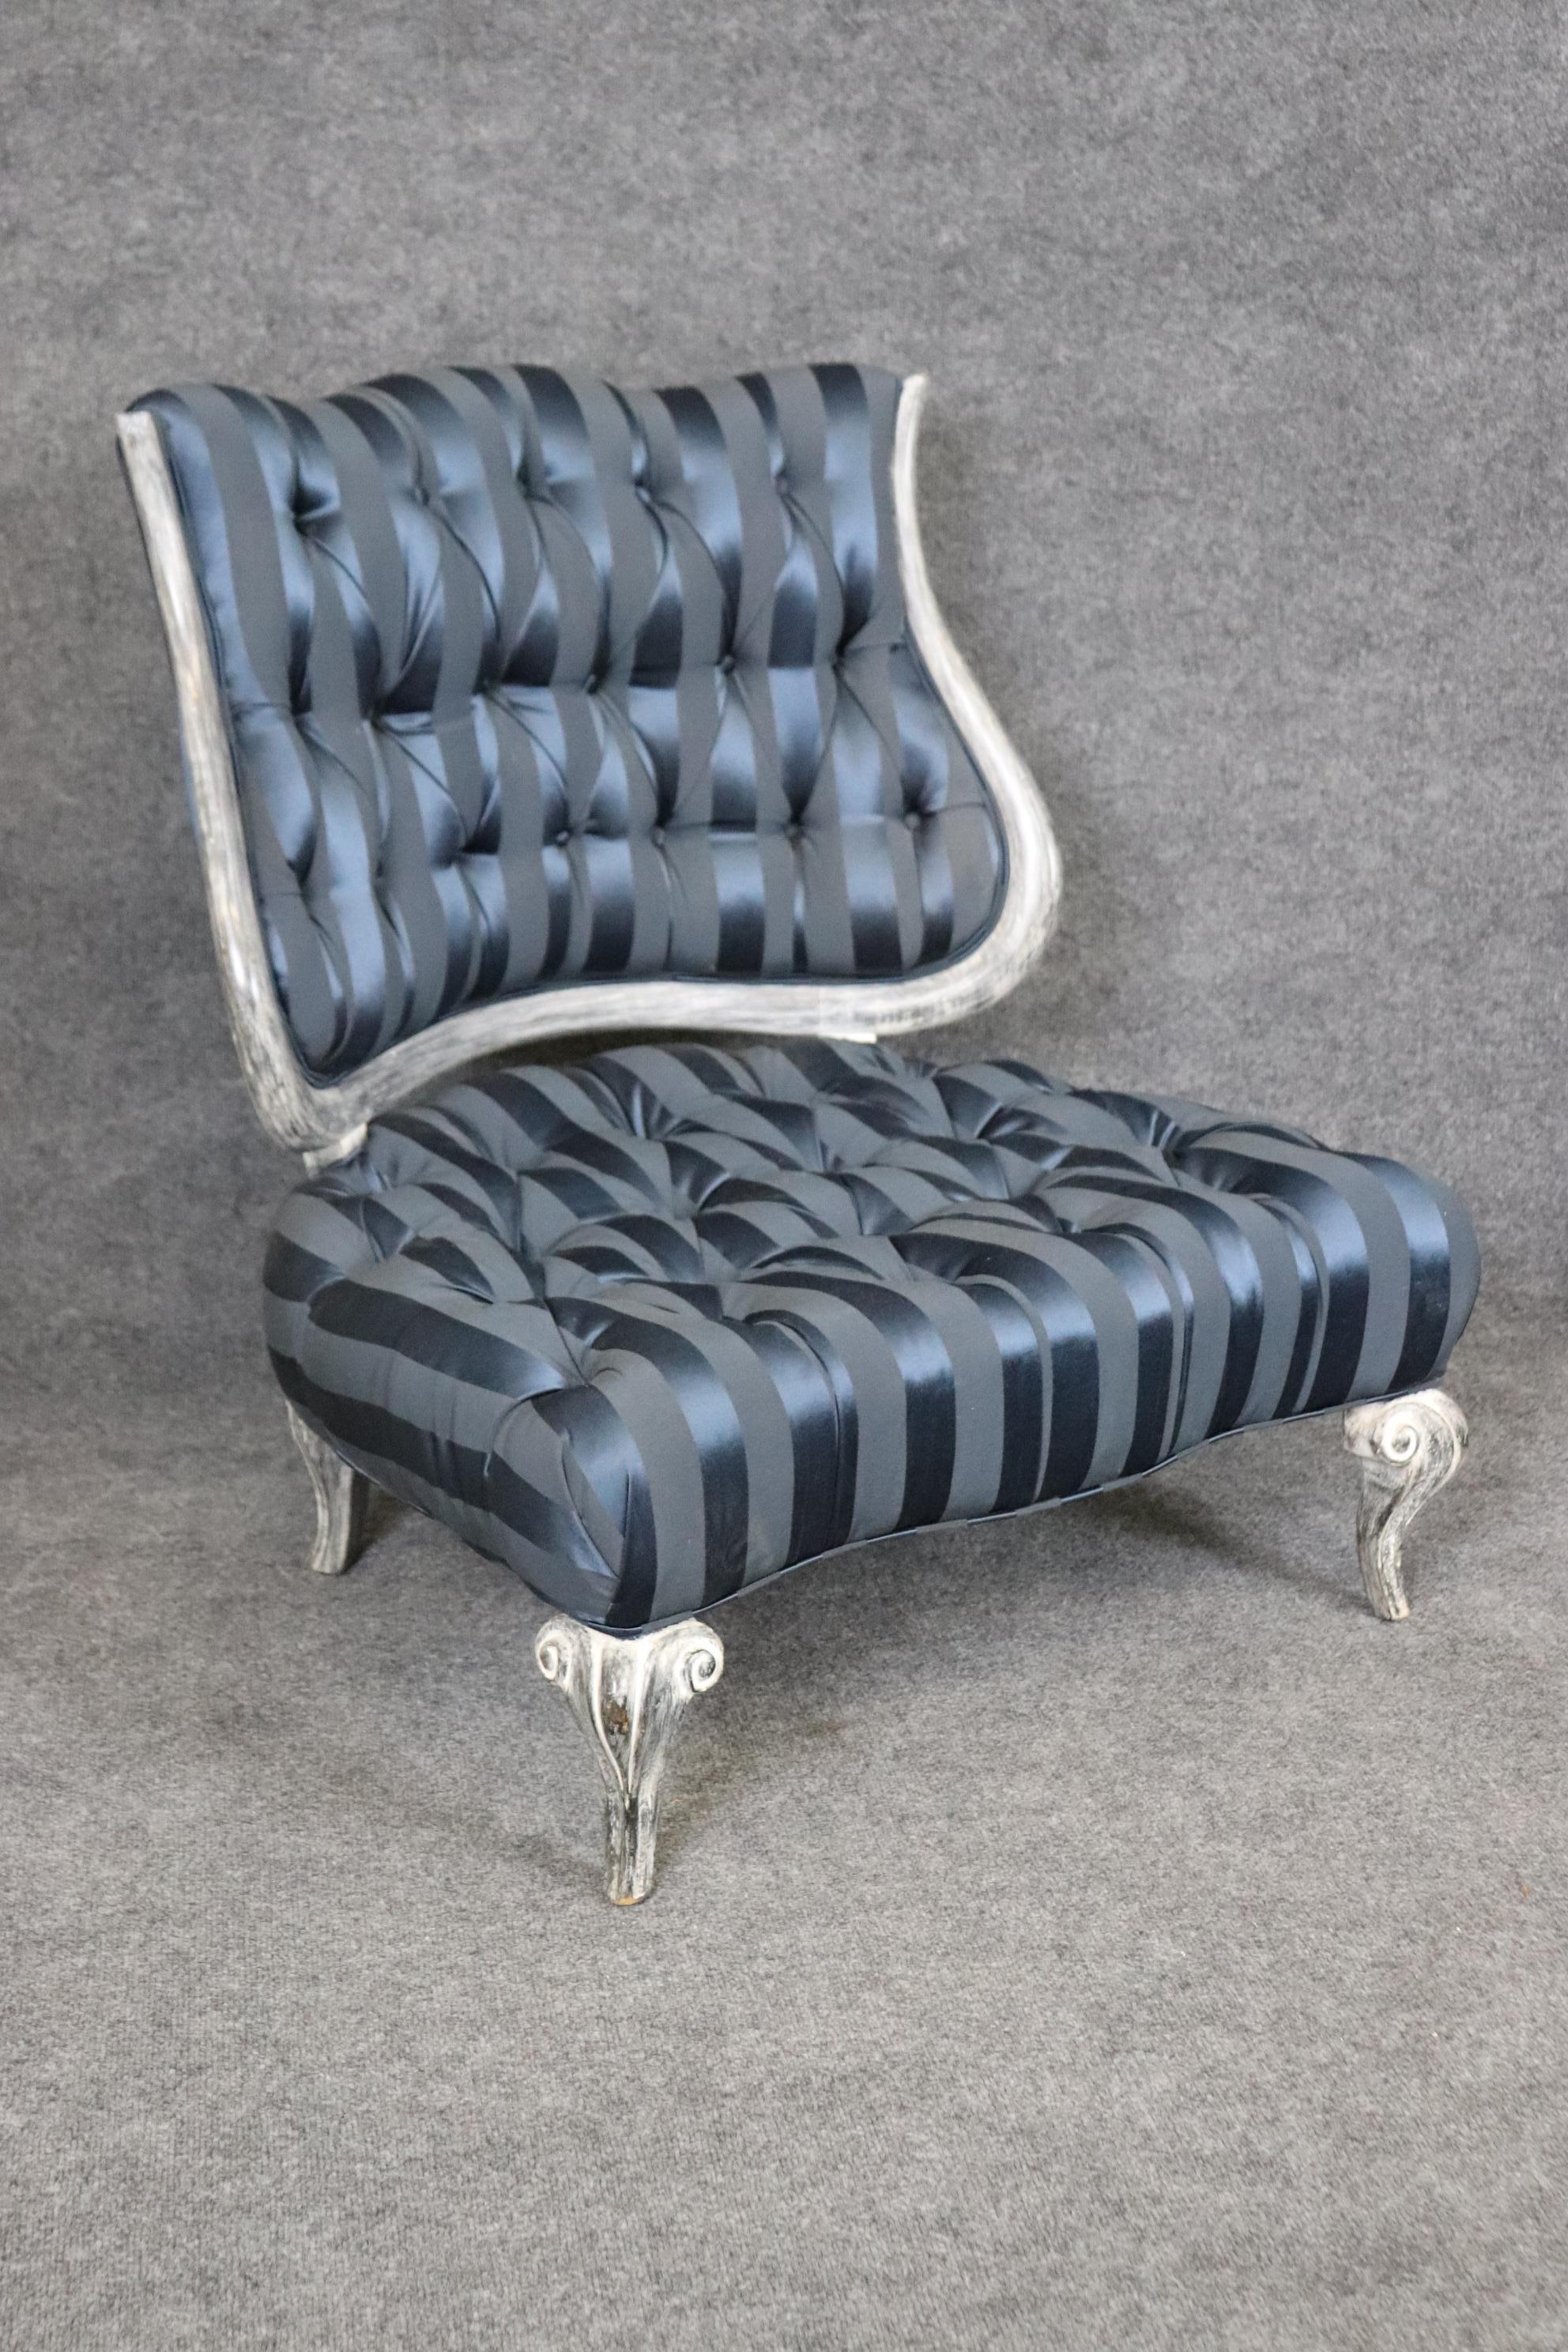 Comme une paire de chaises de Downton Abbey, ces chaises à bavardages sont faites pour prendre le thé et les biscuits et se trouvaient dans la maison d'un seigneur ou d'un riche marchand. Ils ont des pieds peints en blanc et sont en bon état pour